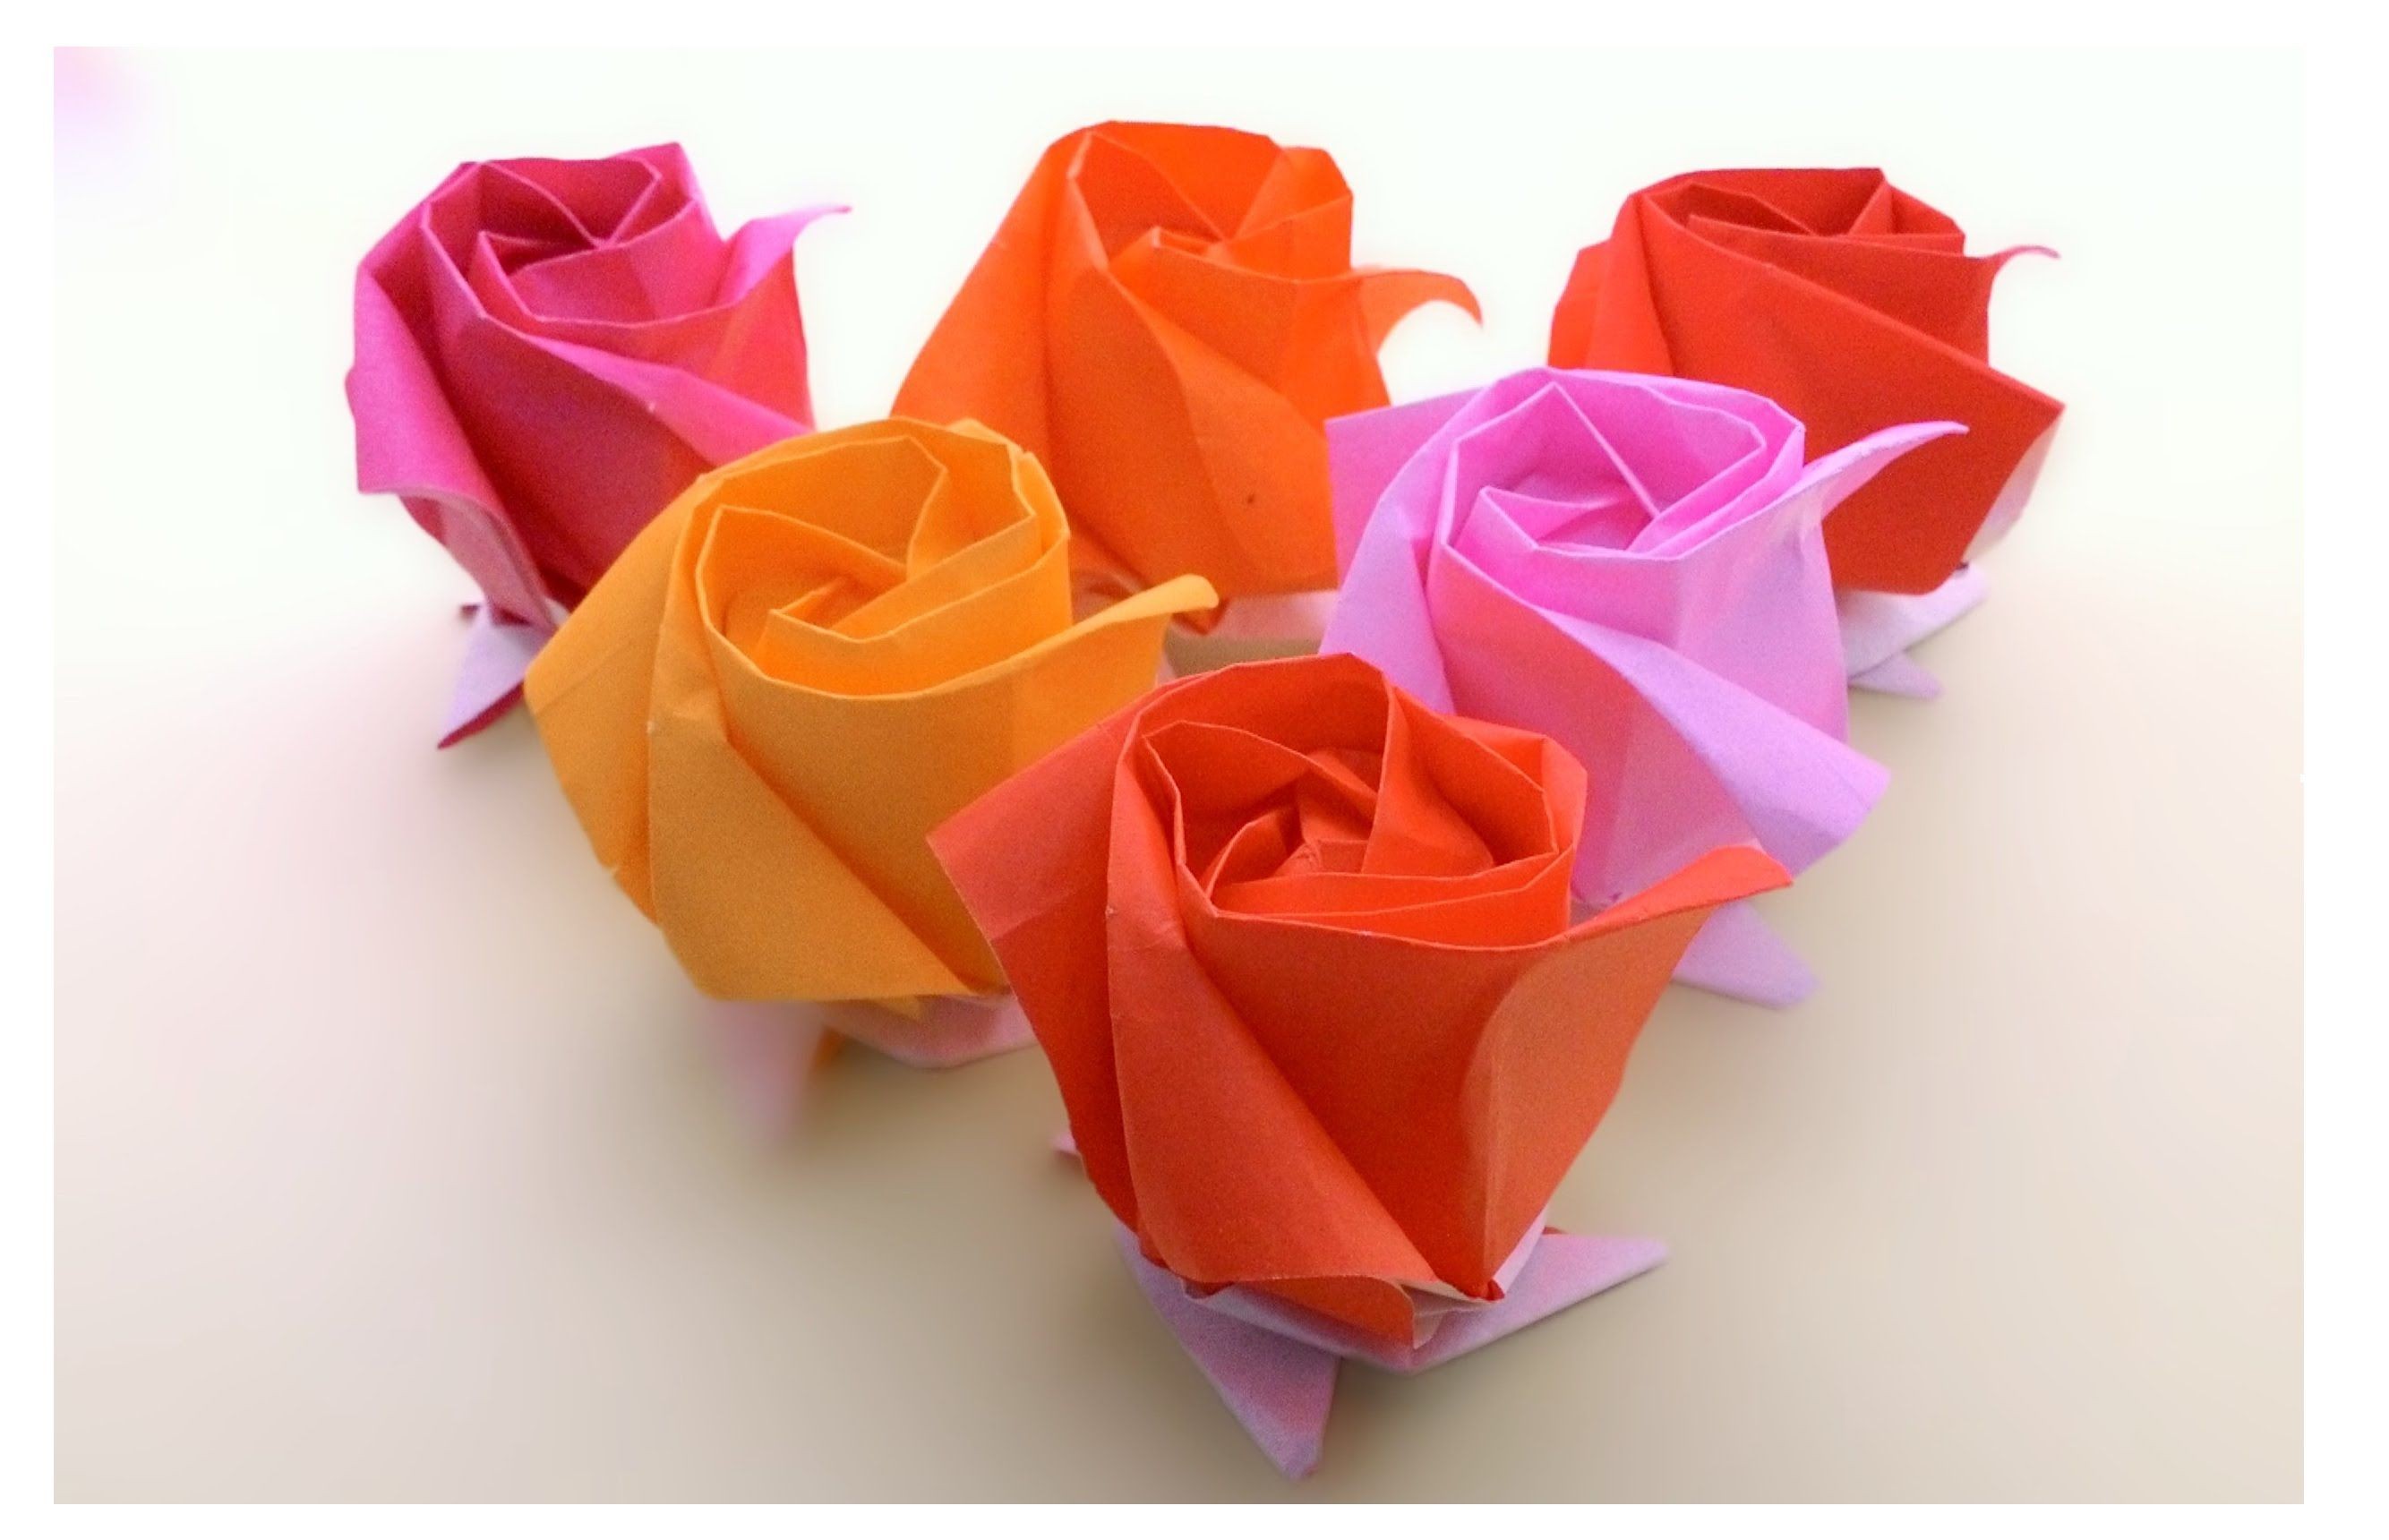 Papercraft Rose origami Kawasaki Rose à¸à¸±à¸à¸à¸¸à¸ à¸¥à¸²à¸à¸à¸²à¸§à¸²à¸à¸²à¸à¸´ à¹à¸ªà¸à¸ªà¸§à¸¢